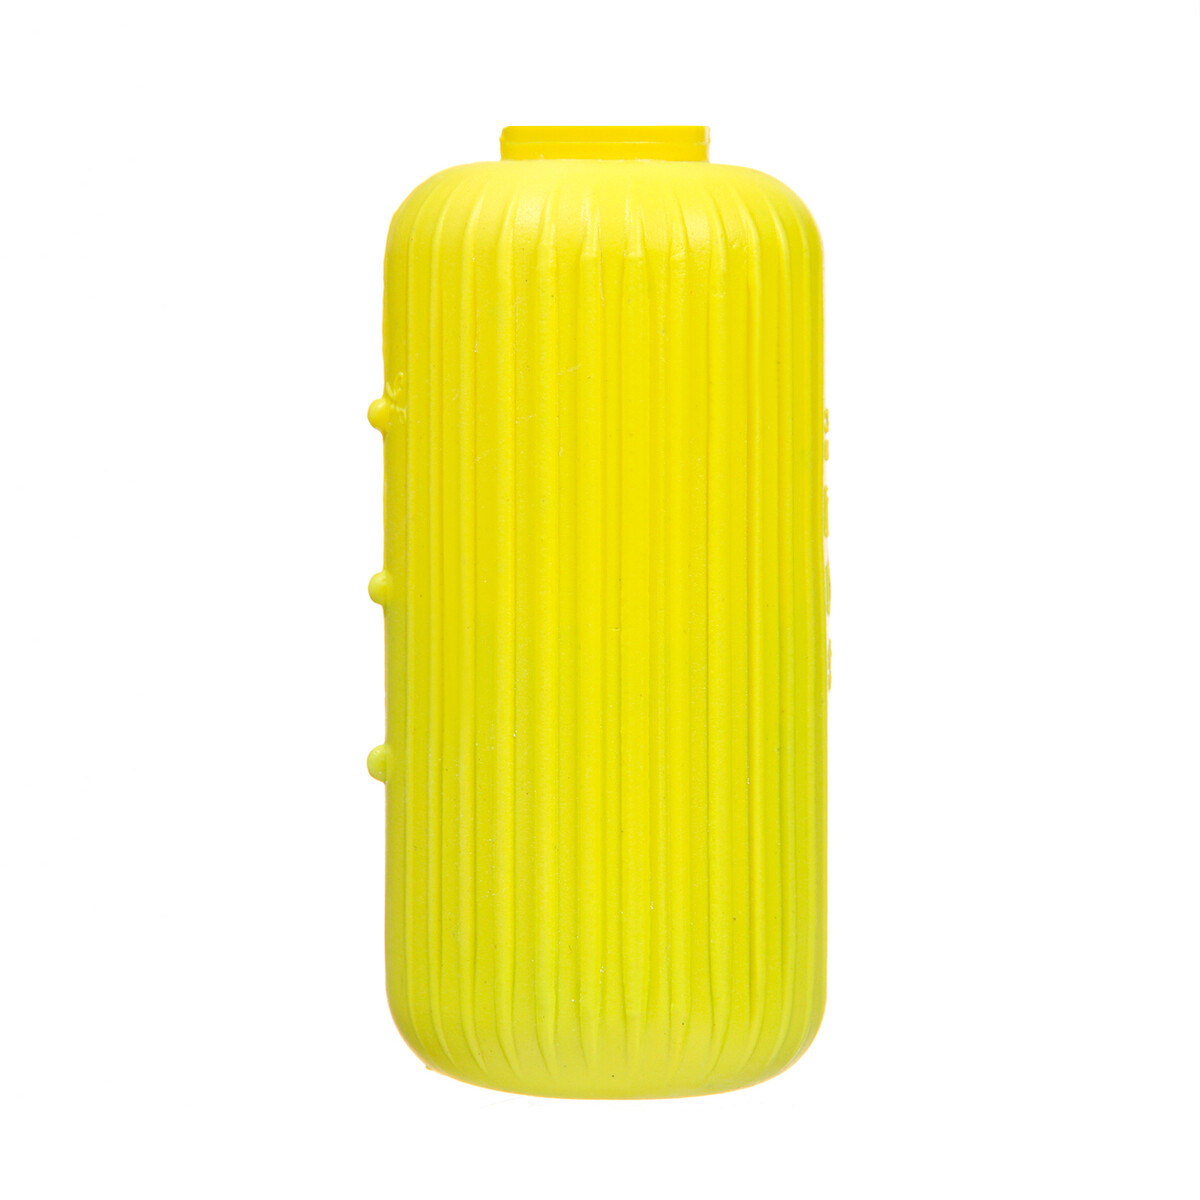 Очиститель для унитаза, лимон 110 г средство для очистки сантехники proffidiv для унитаза 400 г